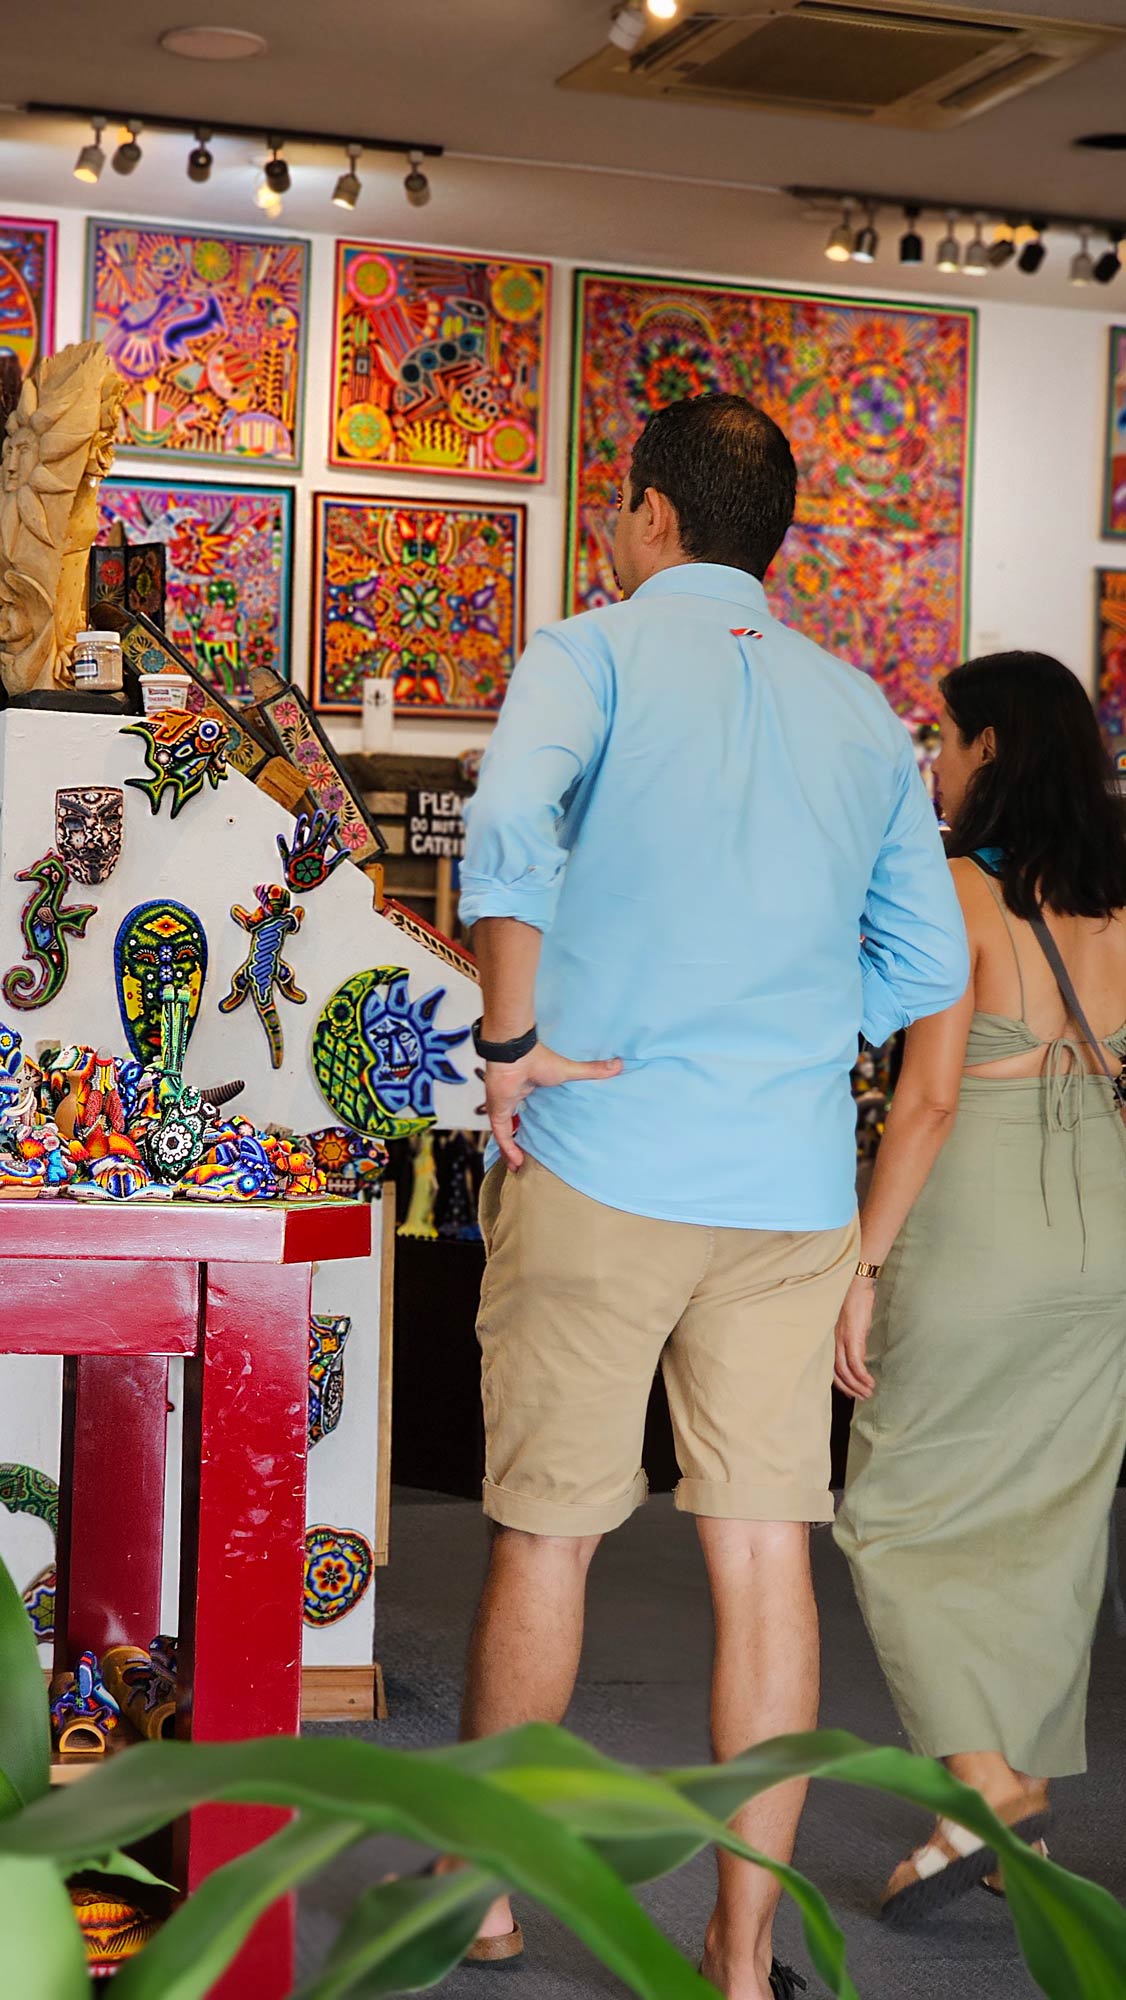 Turistas y expertos en arte en una galeria de arte huichol en puerto vallarta mexico